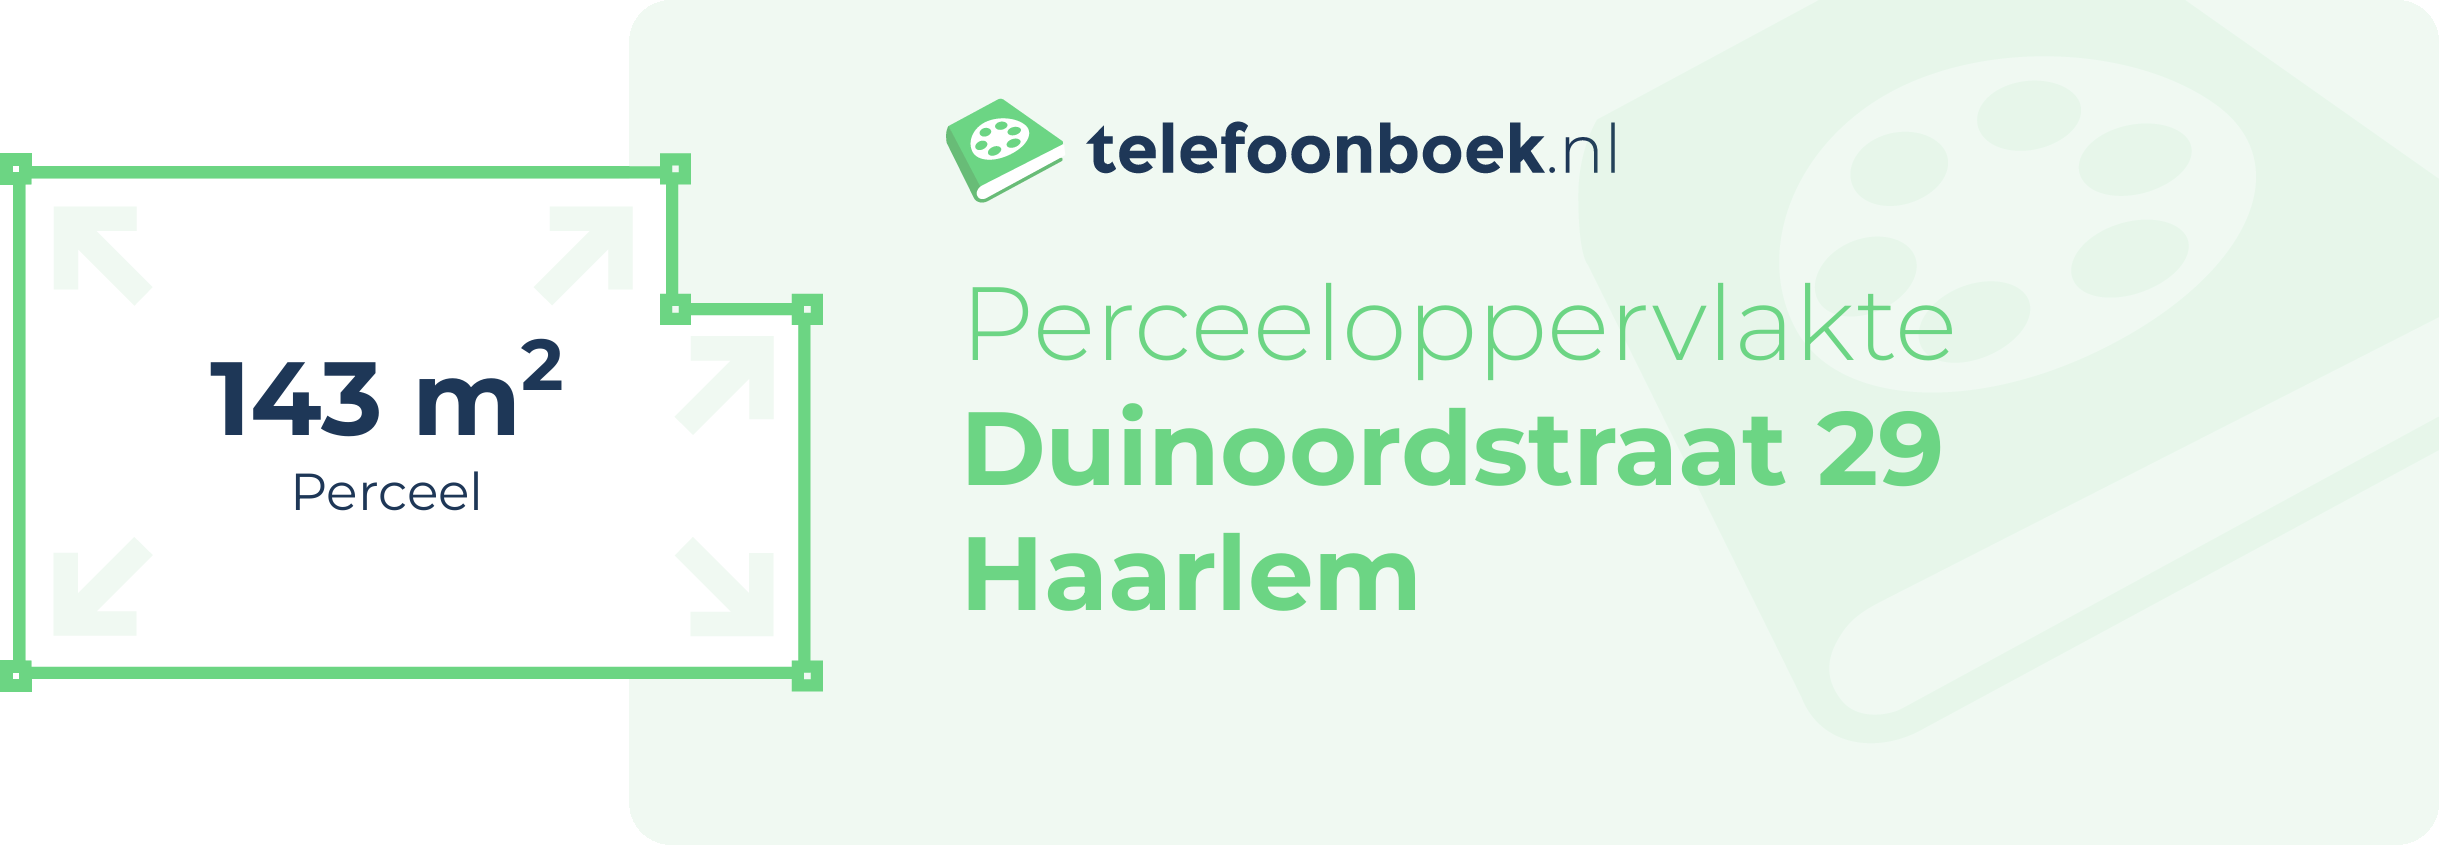 Perceeloppervlakte Duinoordstraat 29 Haarlem